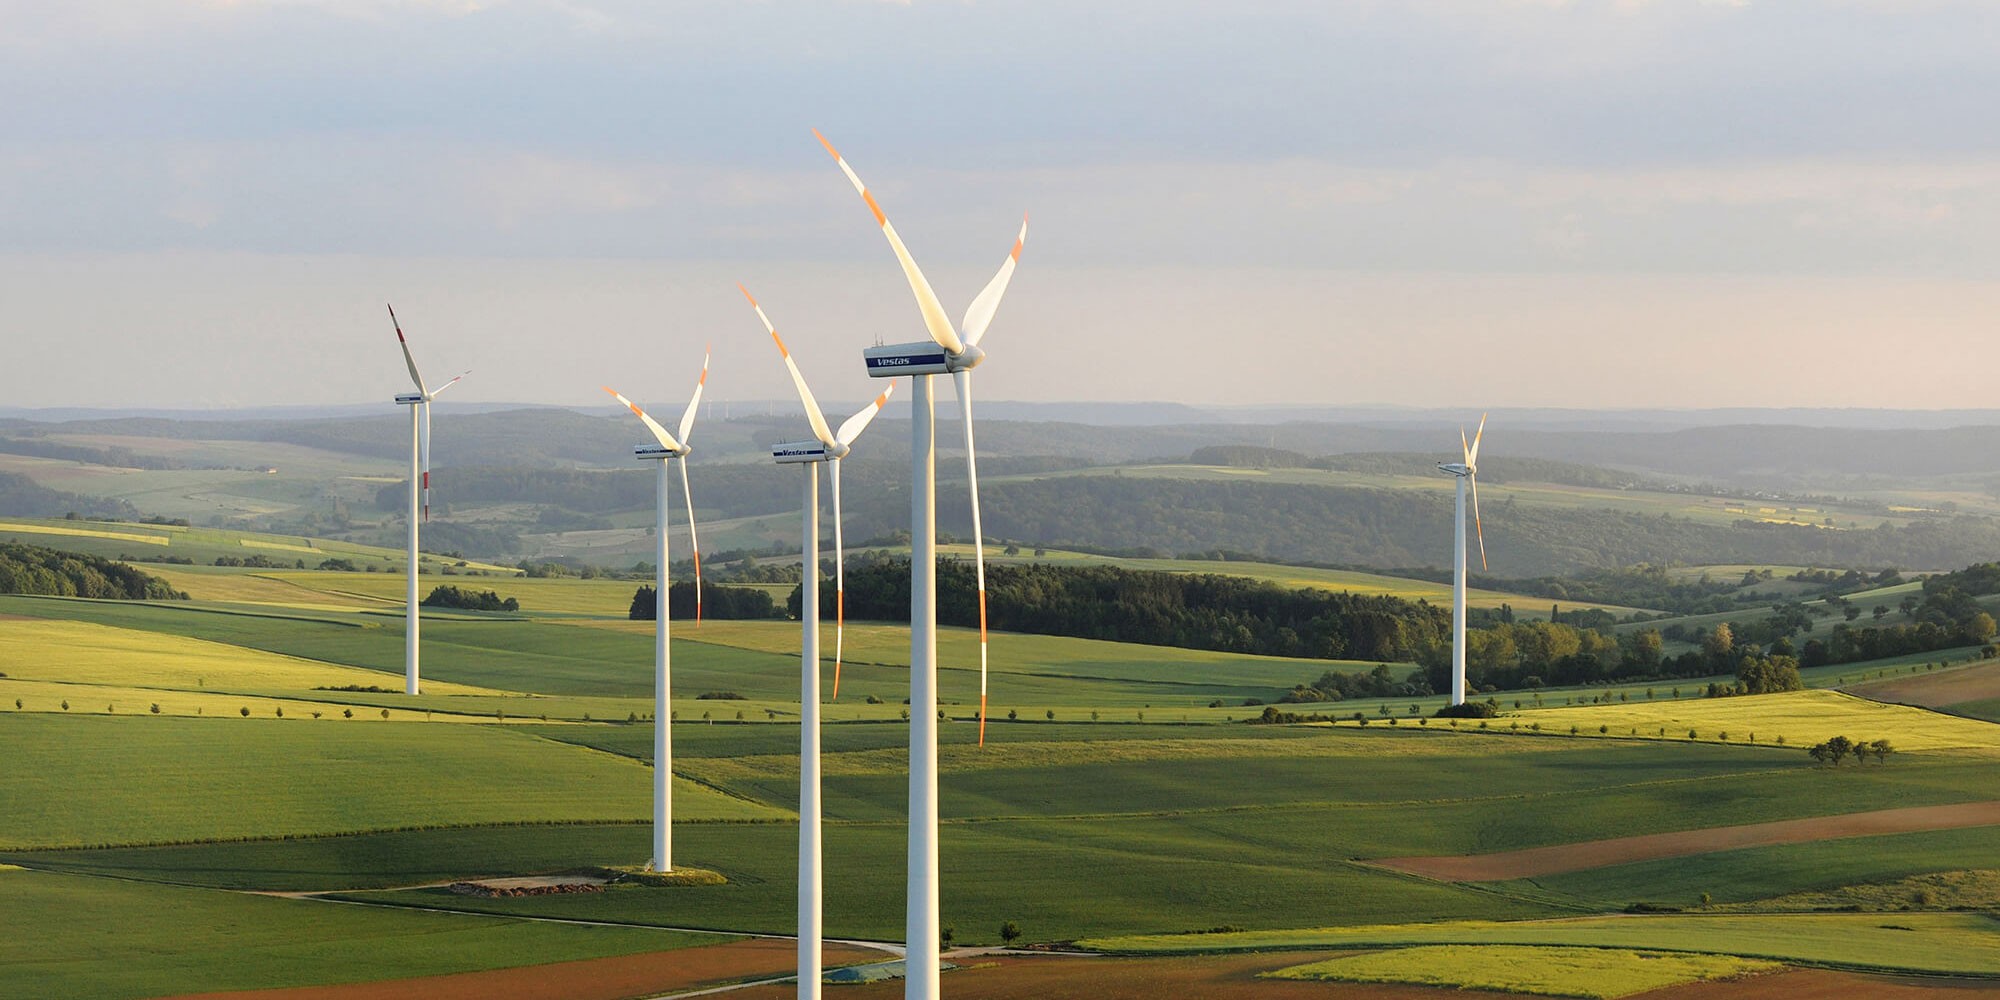 EnBW wind farm in Eisenach, Germany